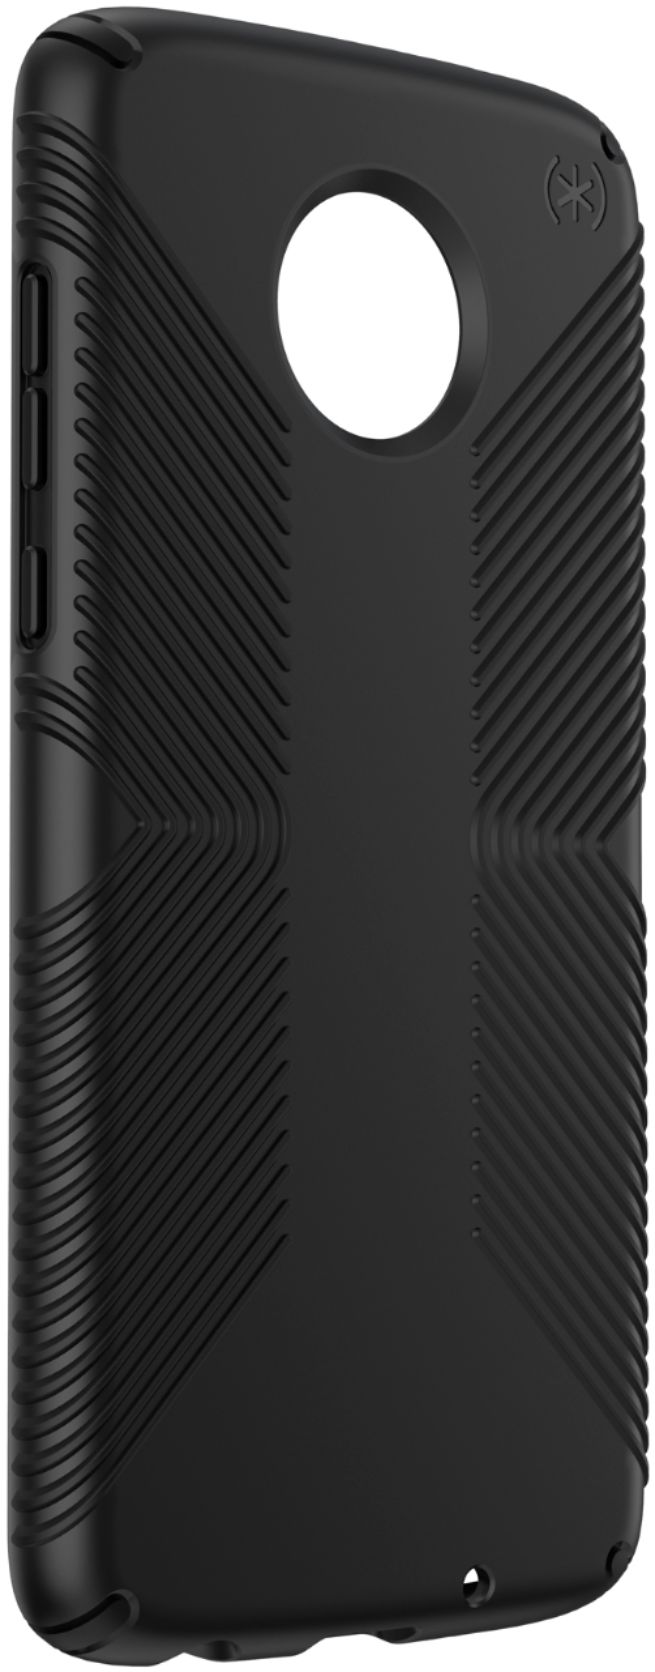 Best Buy: Speck Presidio Grip Case for Motorola Moto Z4 Black 127548-1050